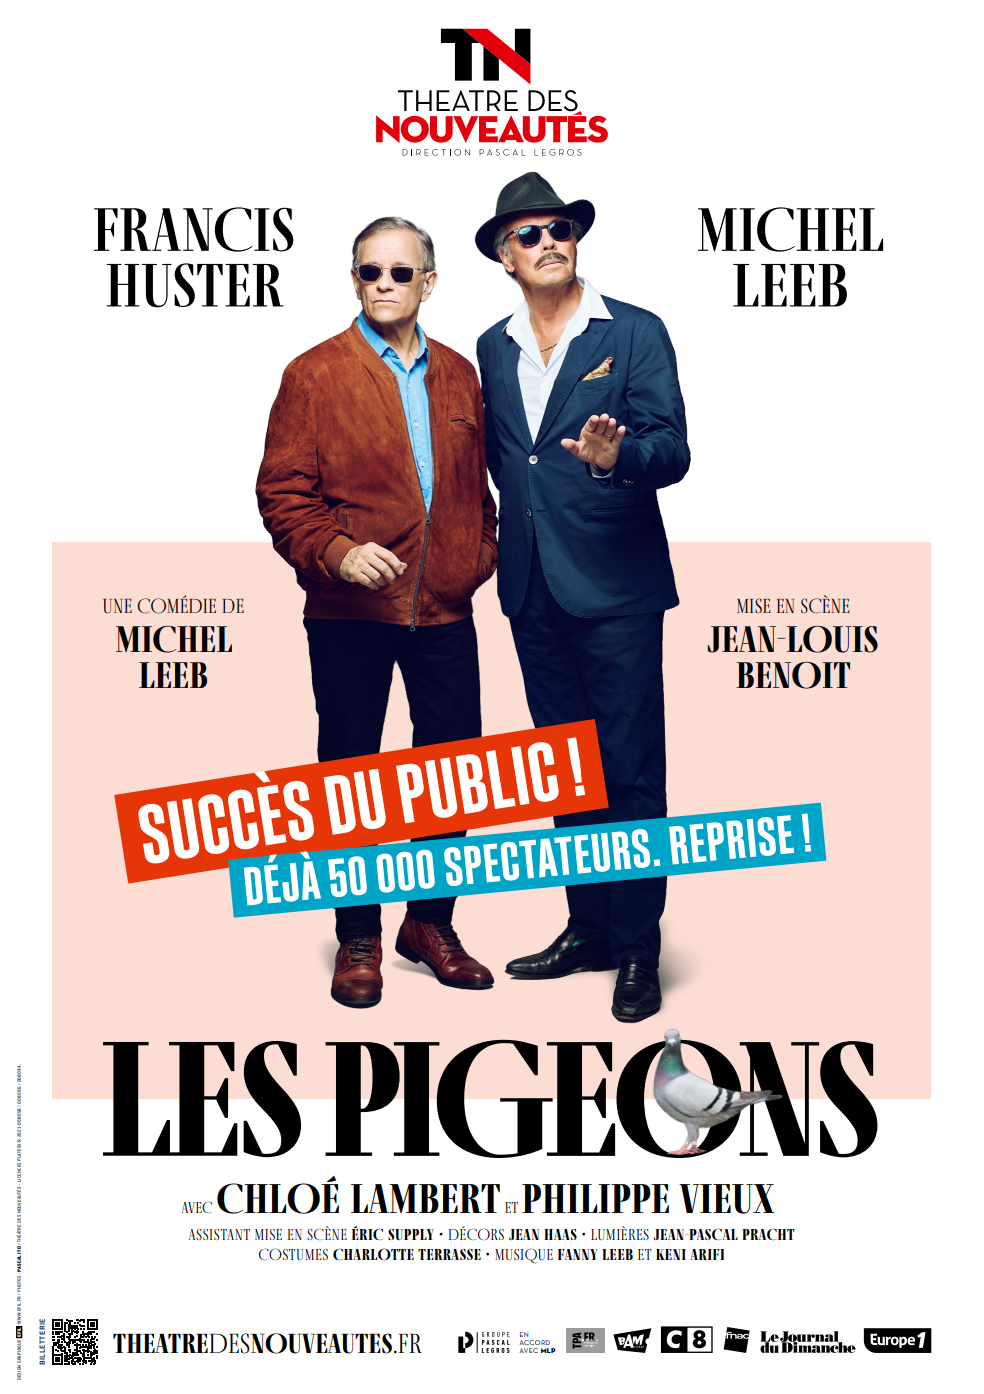 Les Pigeons une pièce de Michel Leeb avec Michel Leeb et Francis Huster